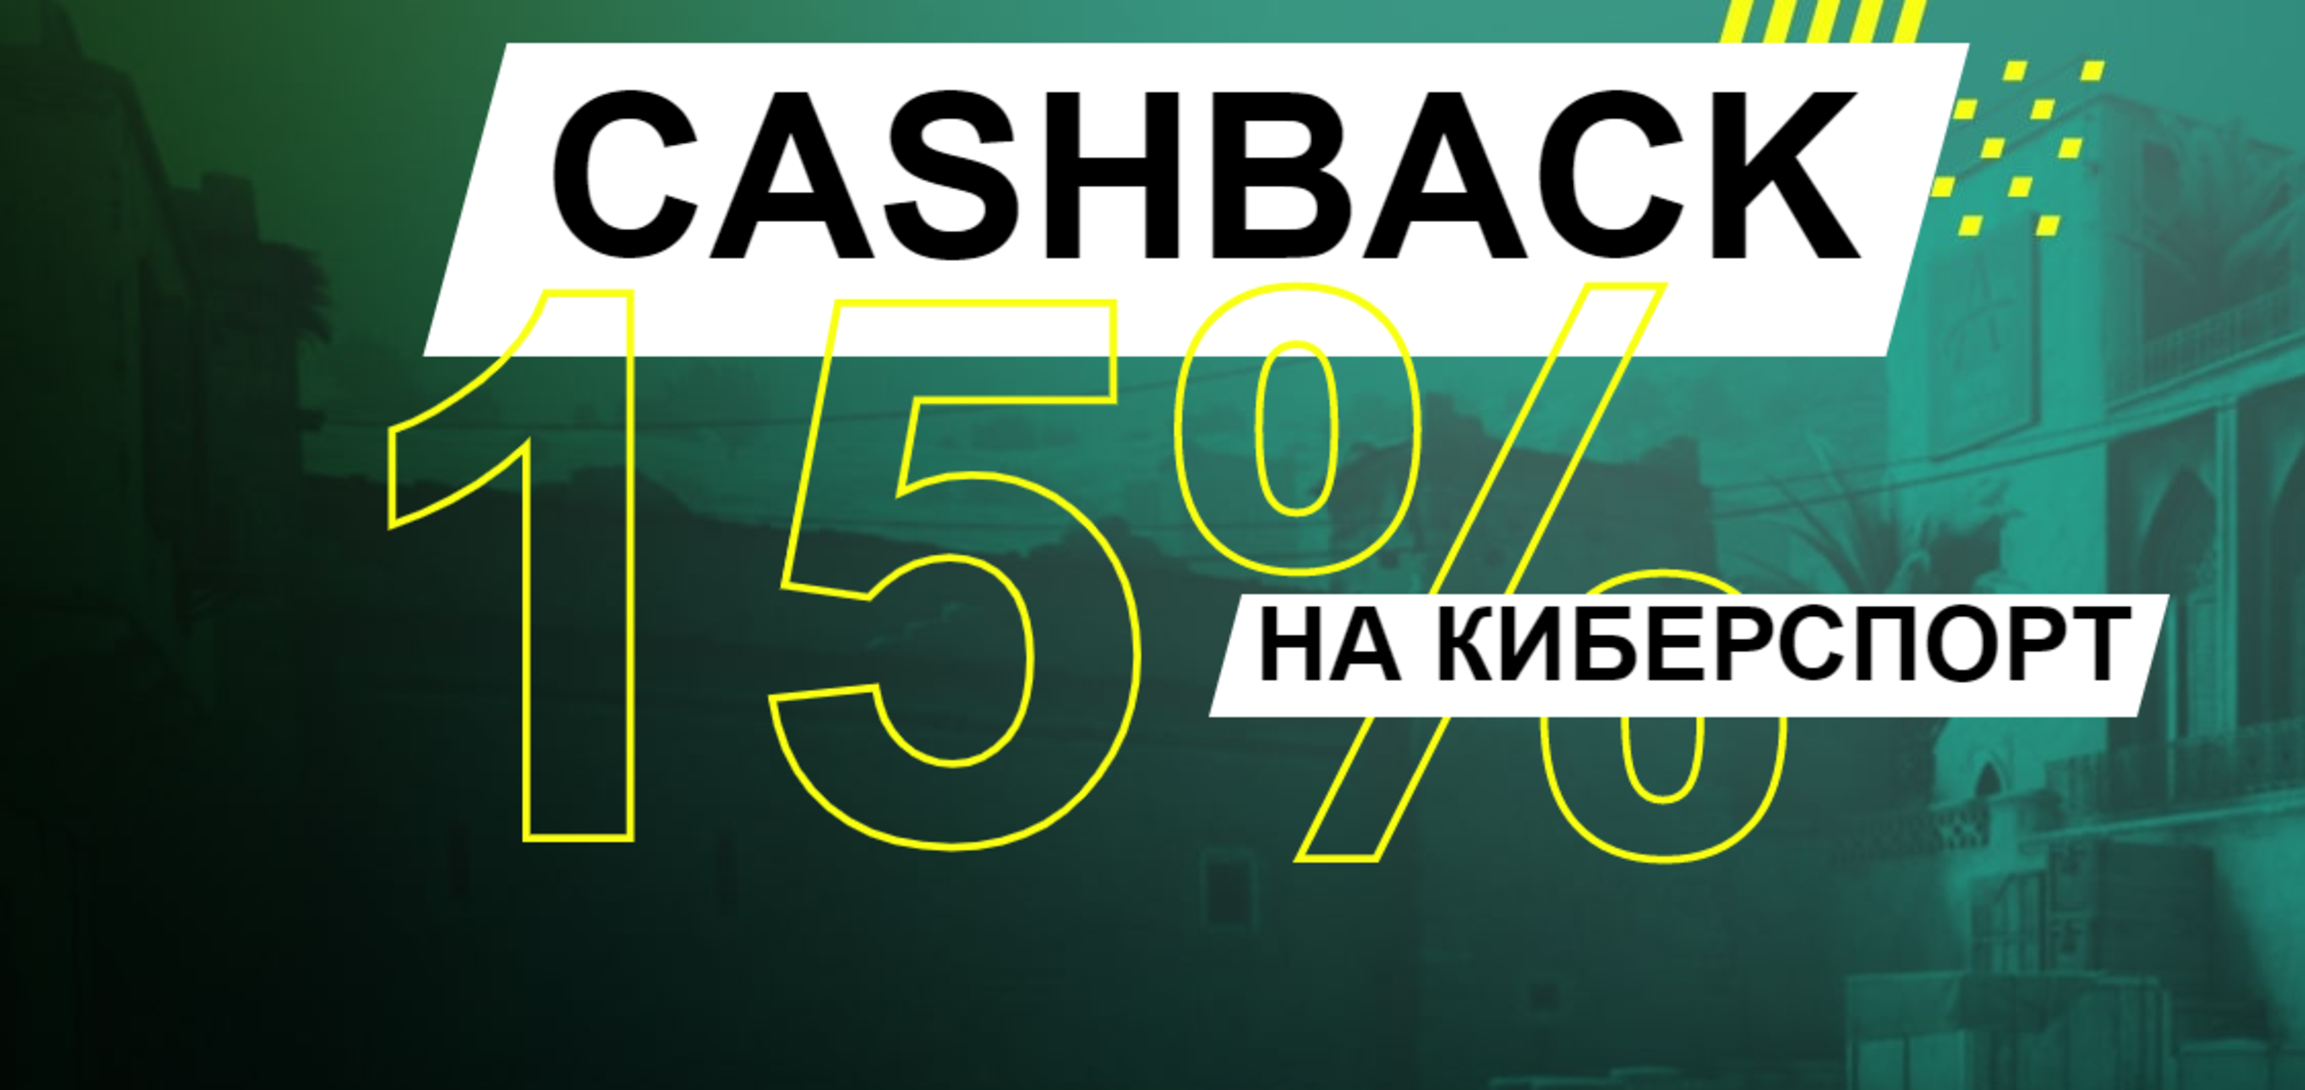 «Париматч» в Беларуси предлагает 15% кэшбэка за ставки на киберспорт